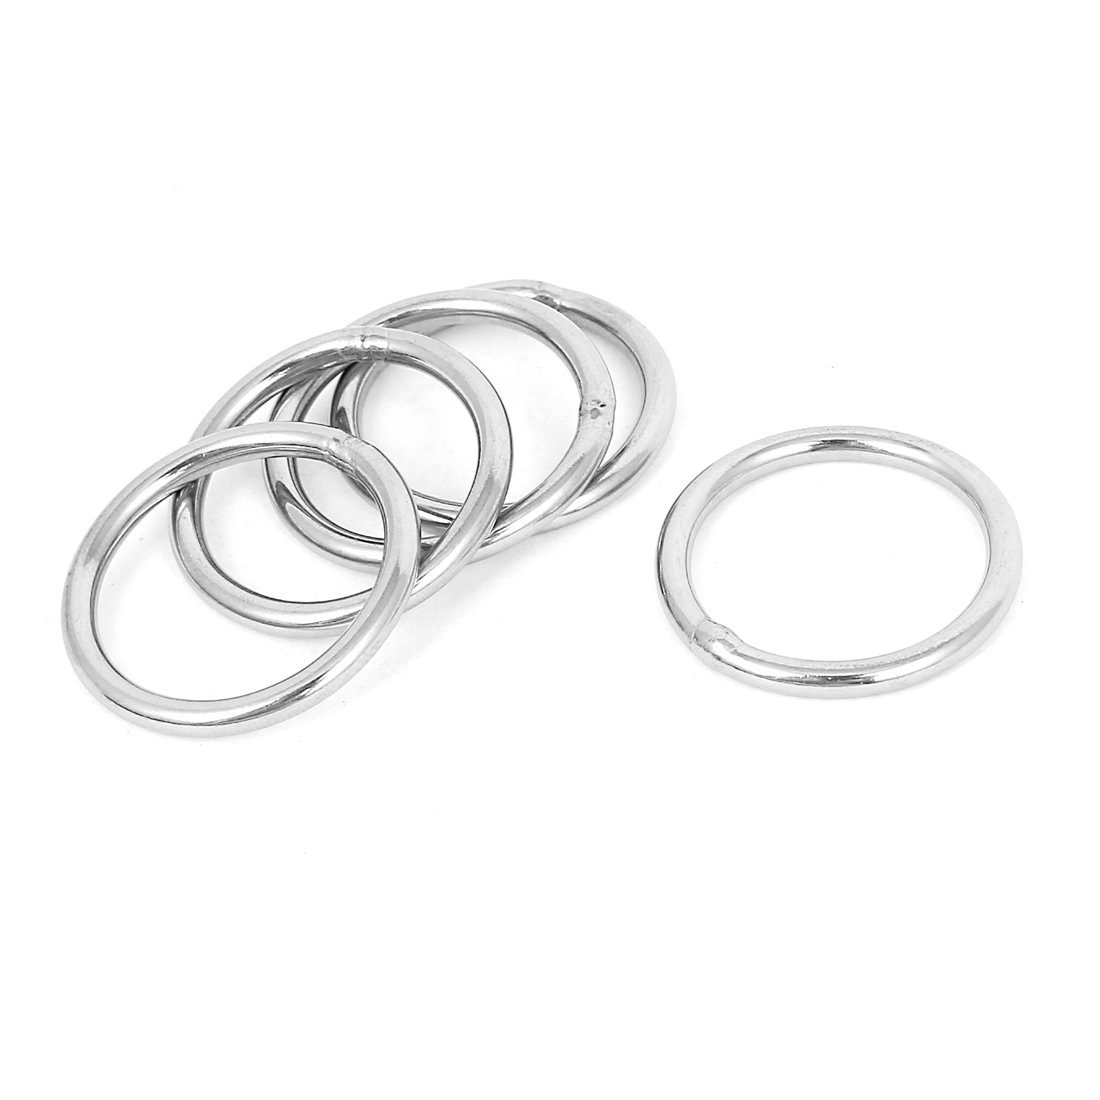 Кольцо сварное сталь undefined. Кольцо нержавейка сварное 60мм. Кольцо нержавейка 0,75* 4мм. Аспирационное кольцо 200 мм нержавеющая сталь. Кольцо нержавеющая сталь 30мм.